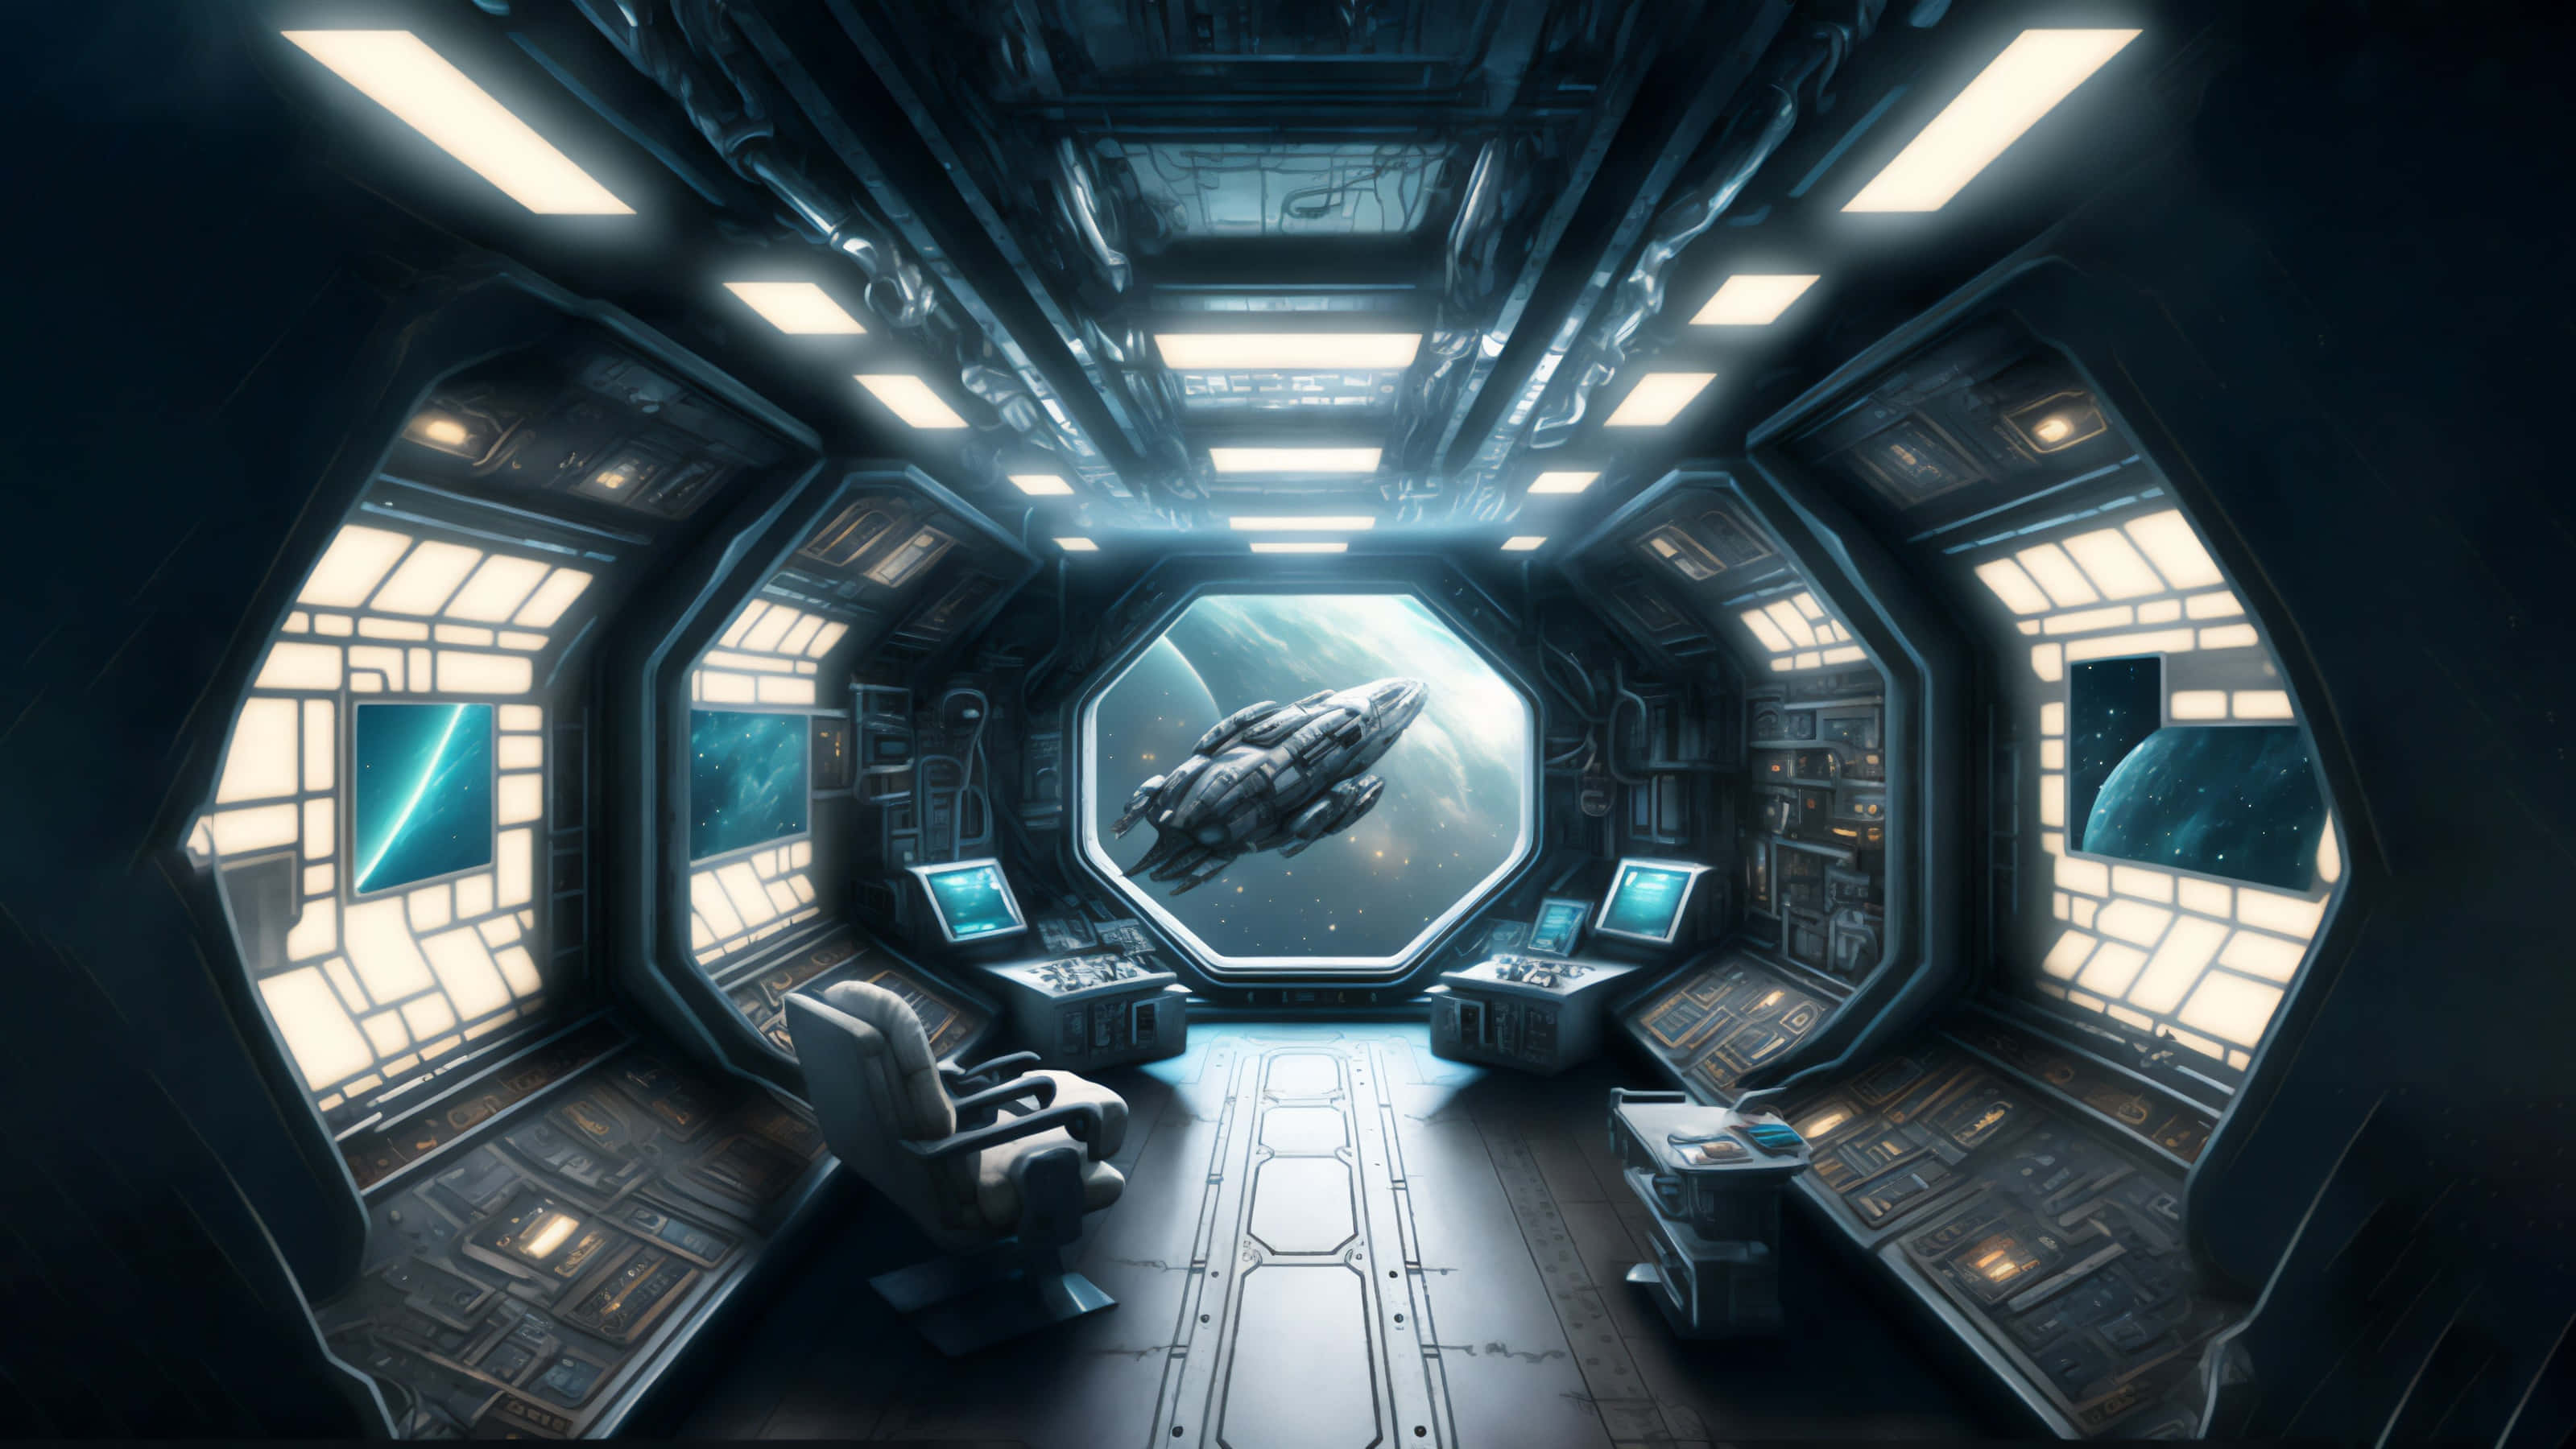 Futuristic Spaceship Cockpit Interior Wallpaper